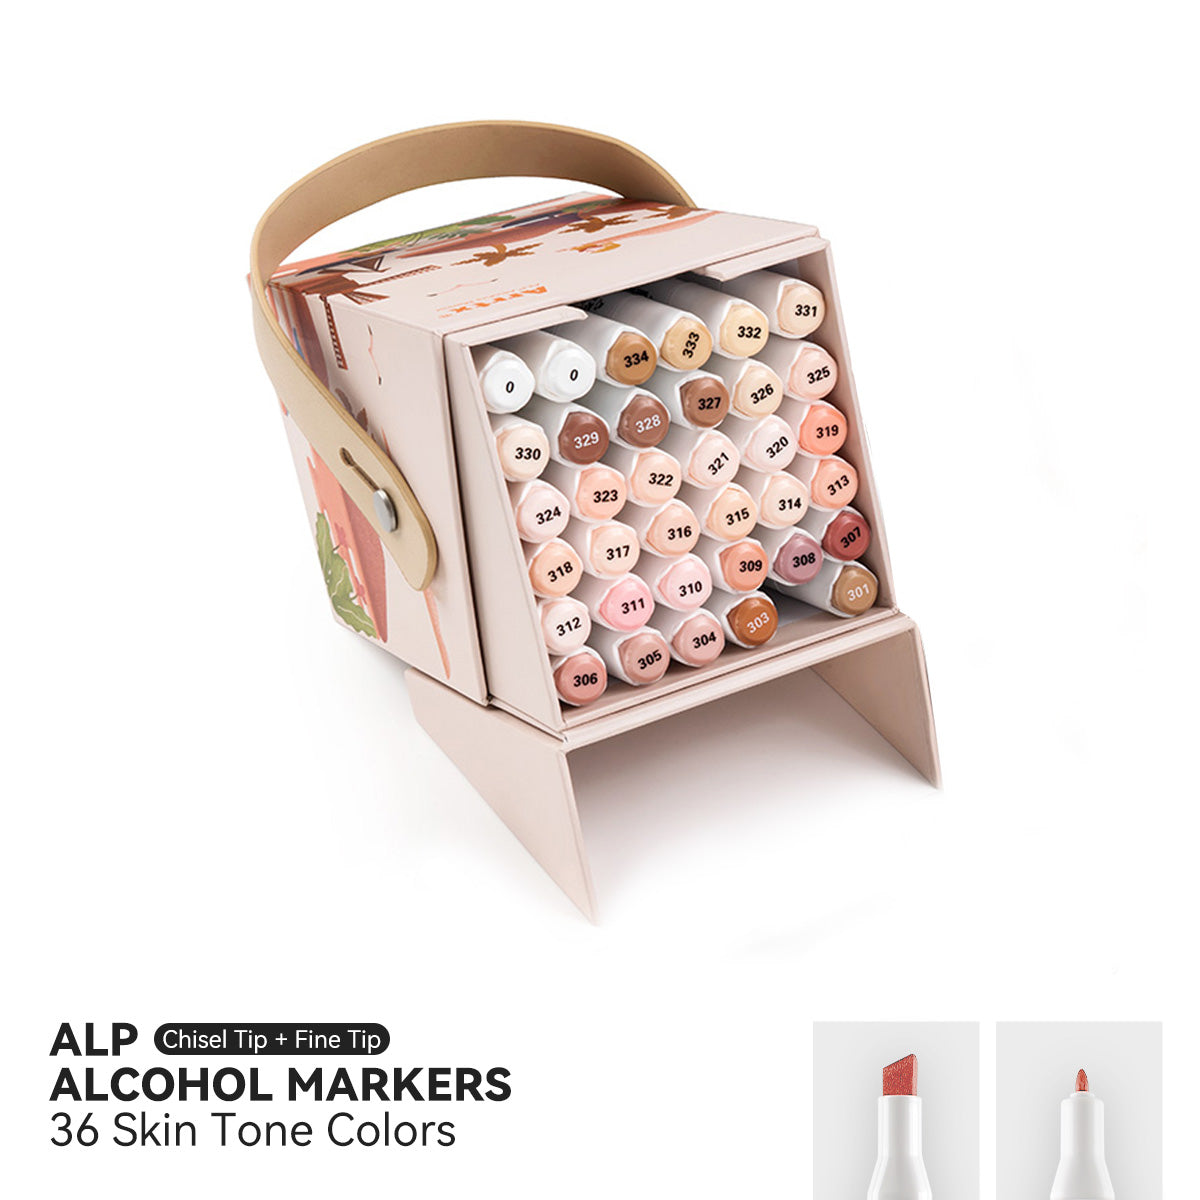 Arrtx OROS Pastel Color 66 Colors Alcohol Markers – ArrtxArt